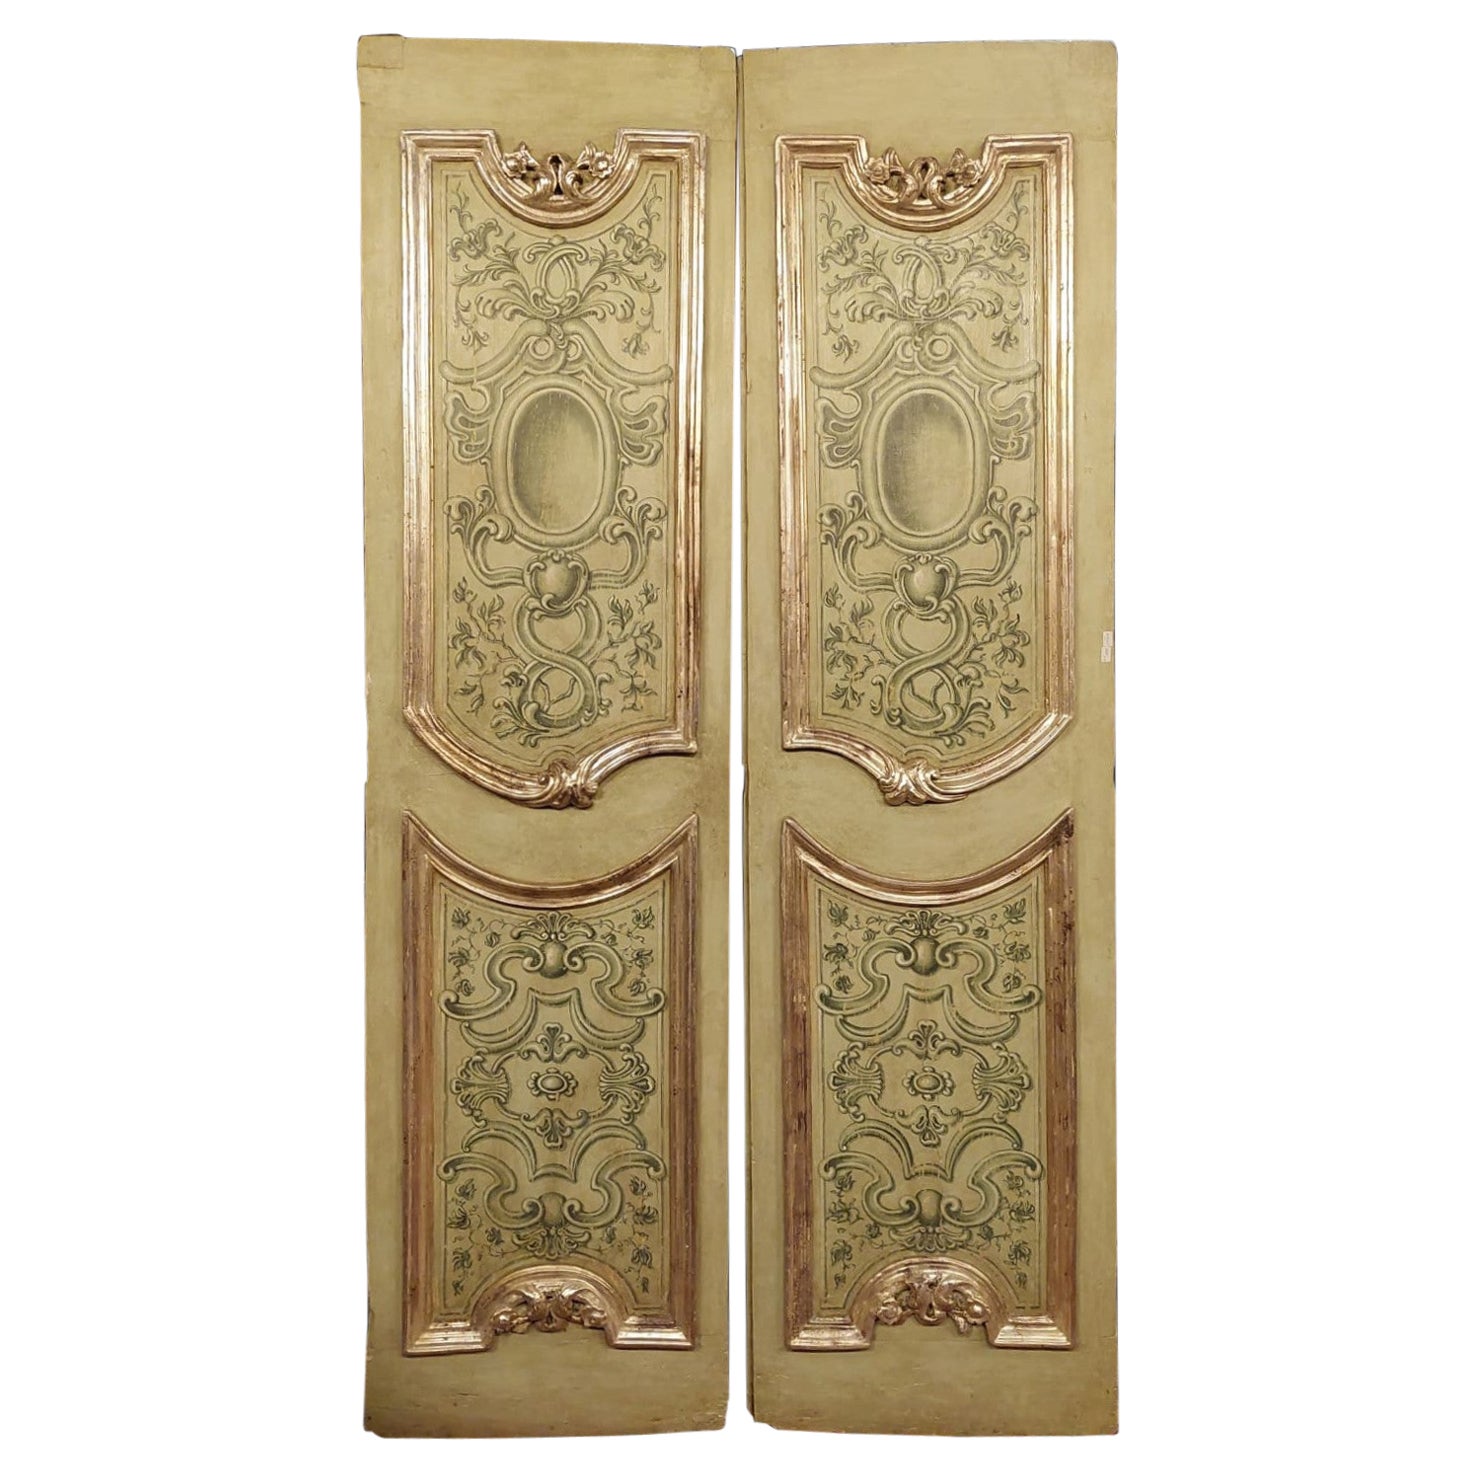 N.4 Antike zweiflügelige Türen, bemalt, geformt und versilbert, Italien '700